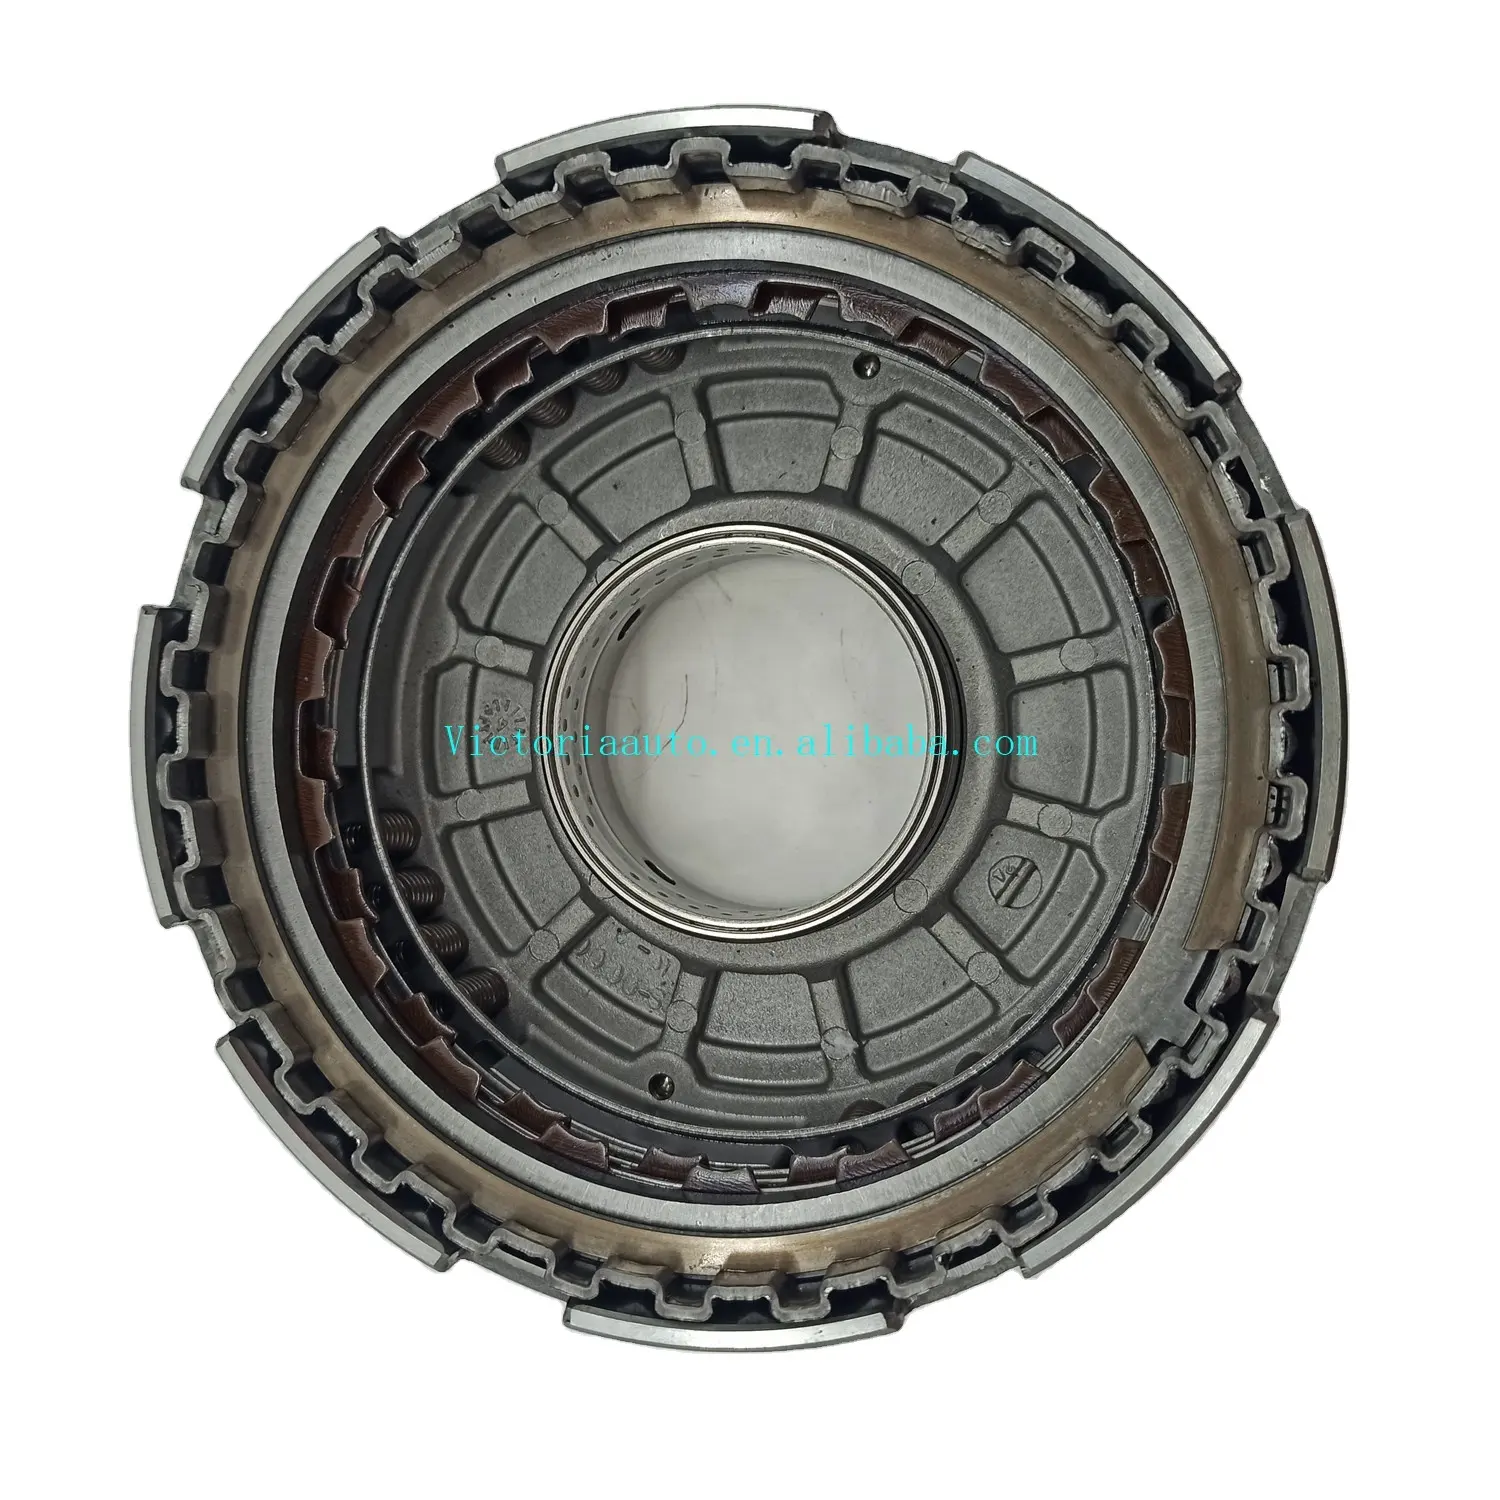 RE4F03A trasmissione automatica reverse tamburo bene usato per Infinity /Nissan RE4F03A-0001-U1